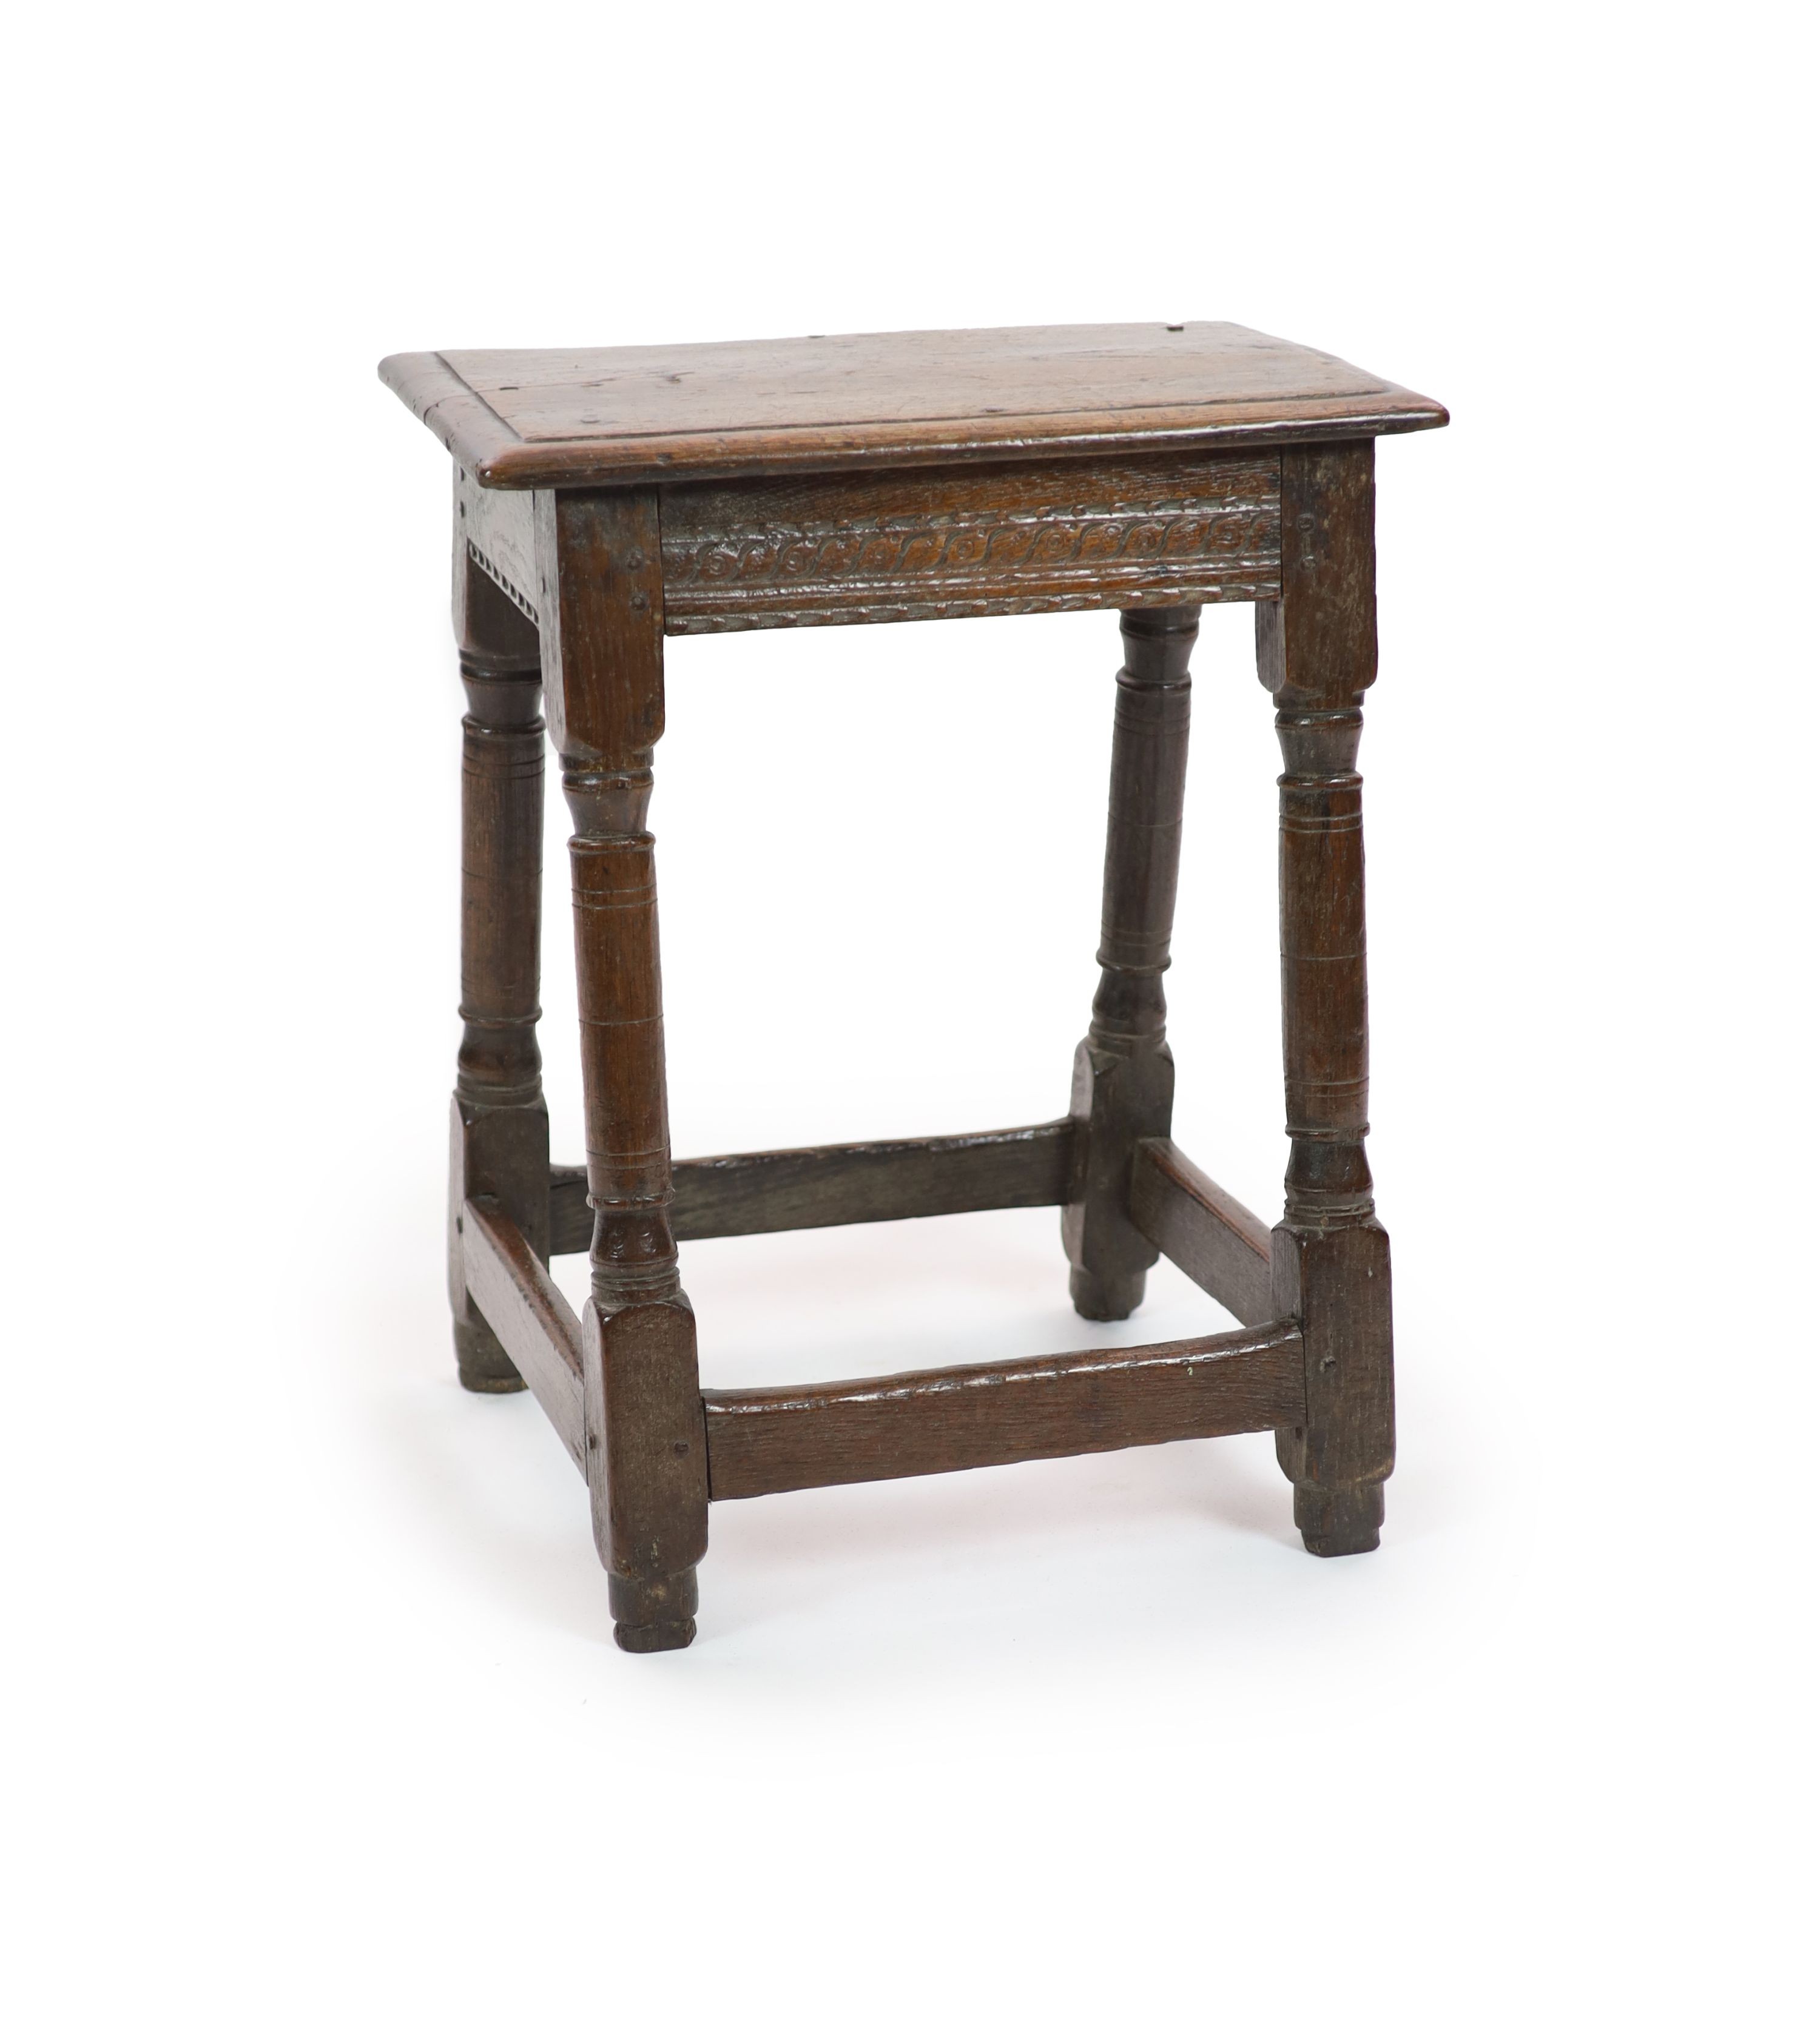 A mid-17th century oak joint stool H 58cm. W 48cm. D 30cm.